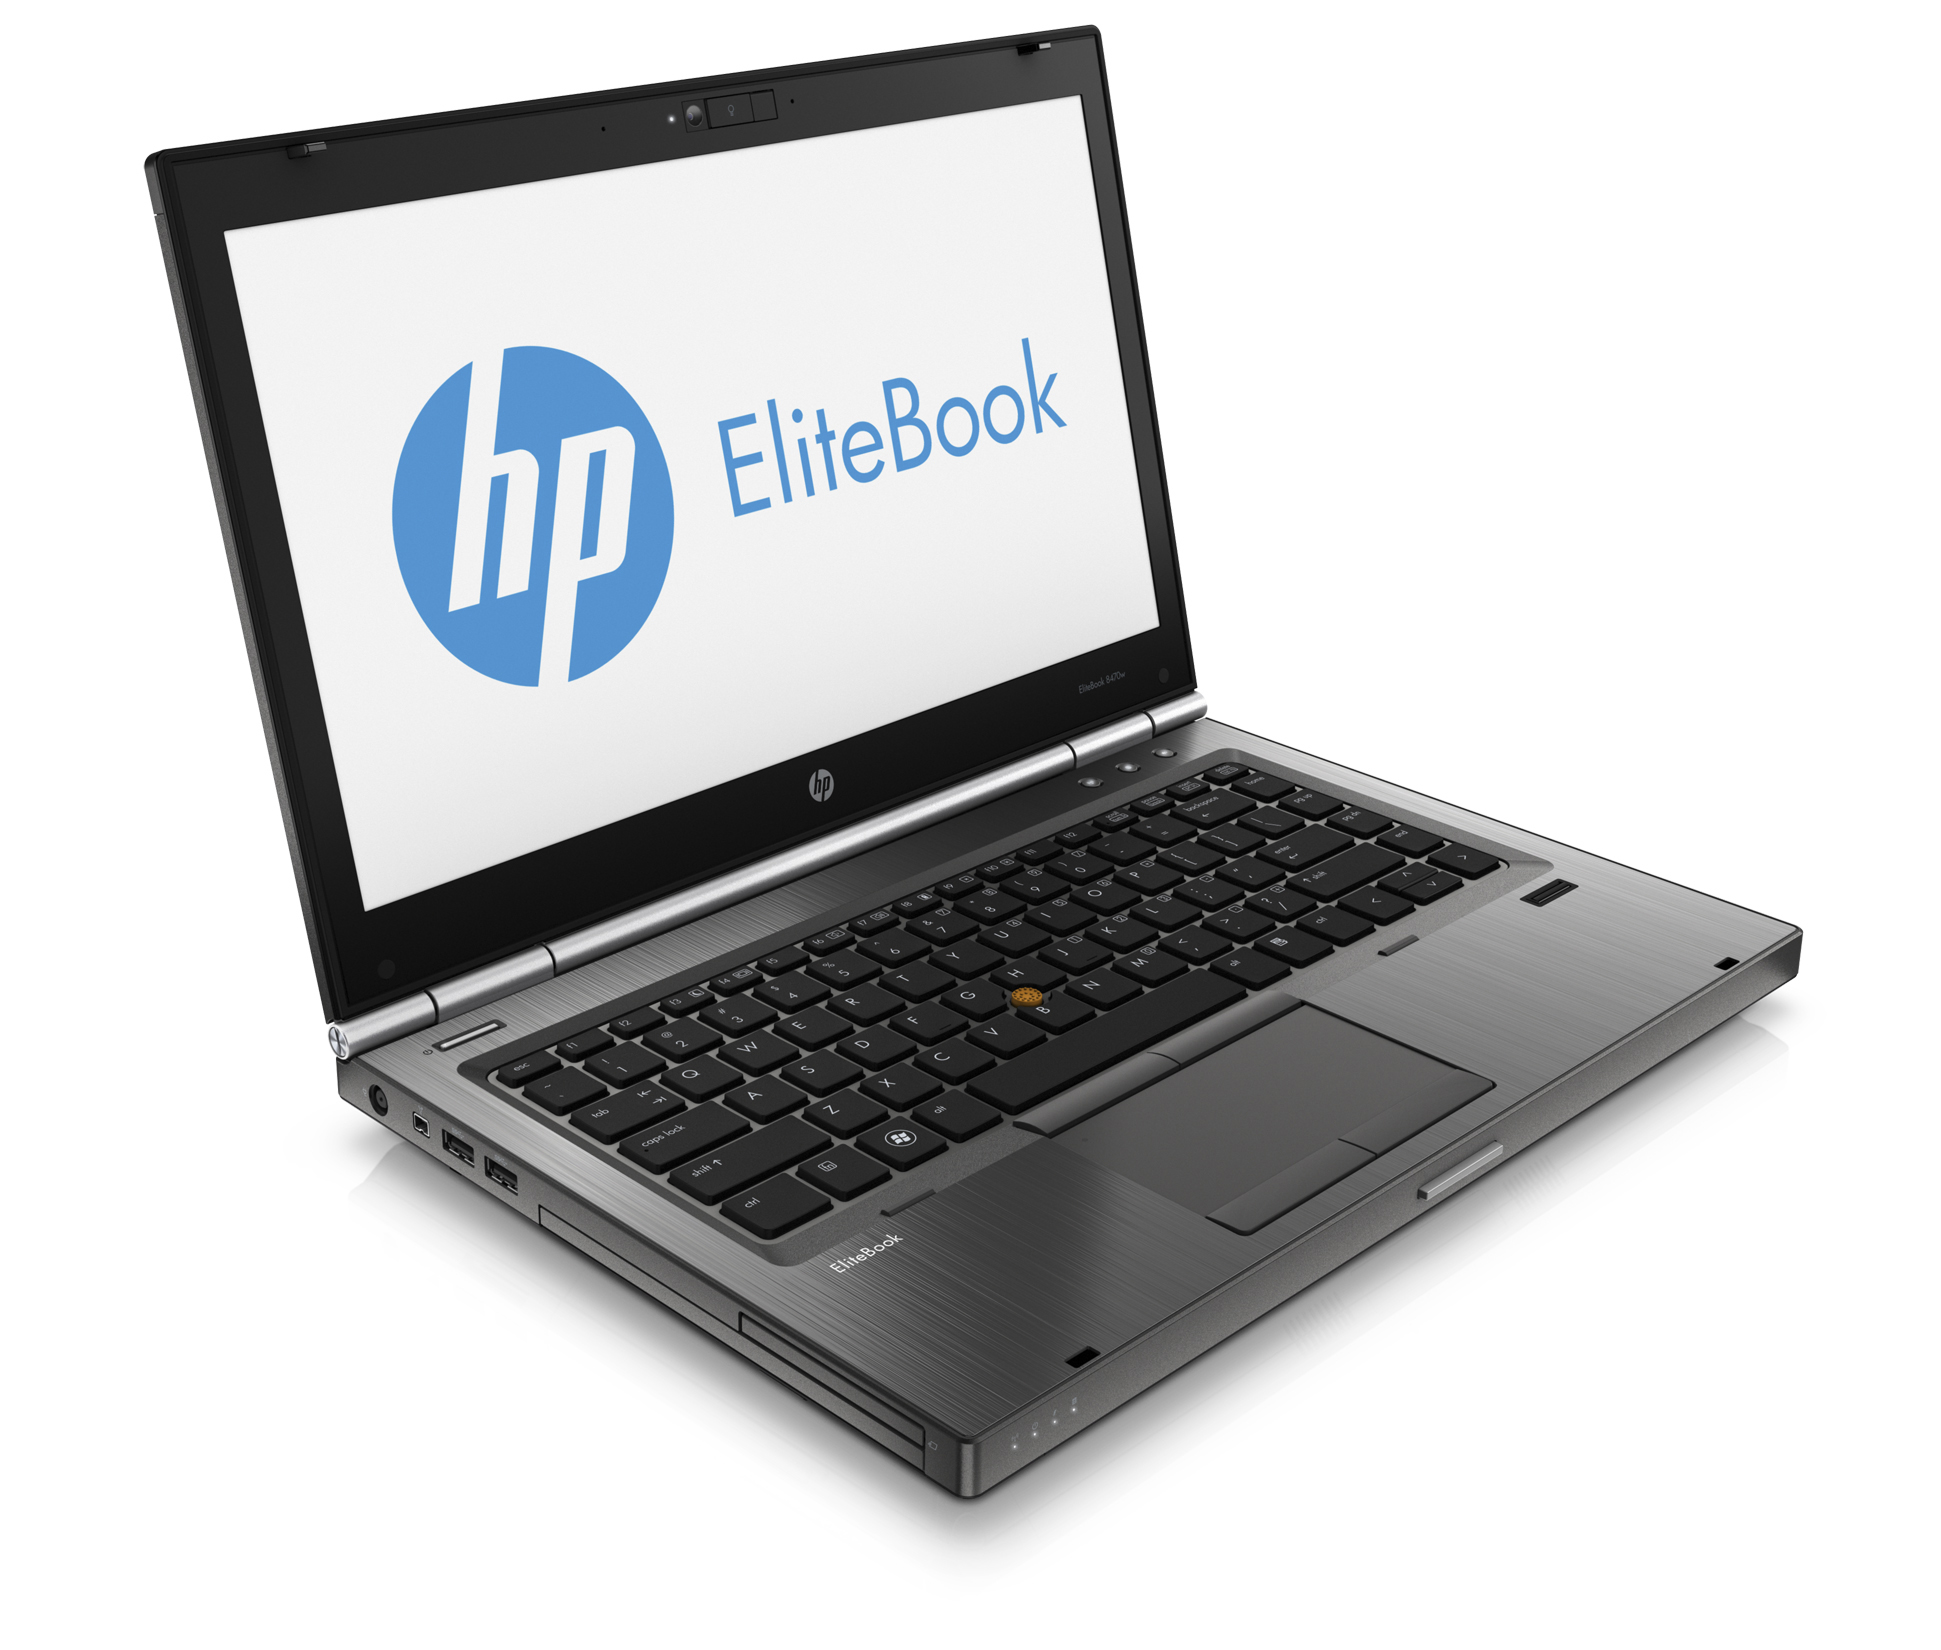 http://www.slashgear.com/wp-content/uploads/2012/05/HP-EliteBook-8470w_FrontLeft_Open.jpg